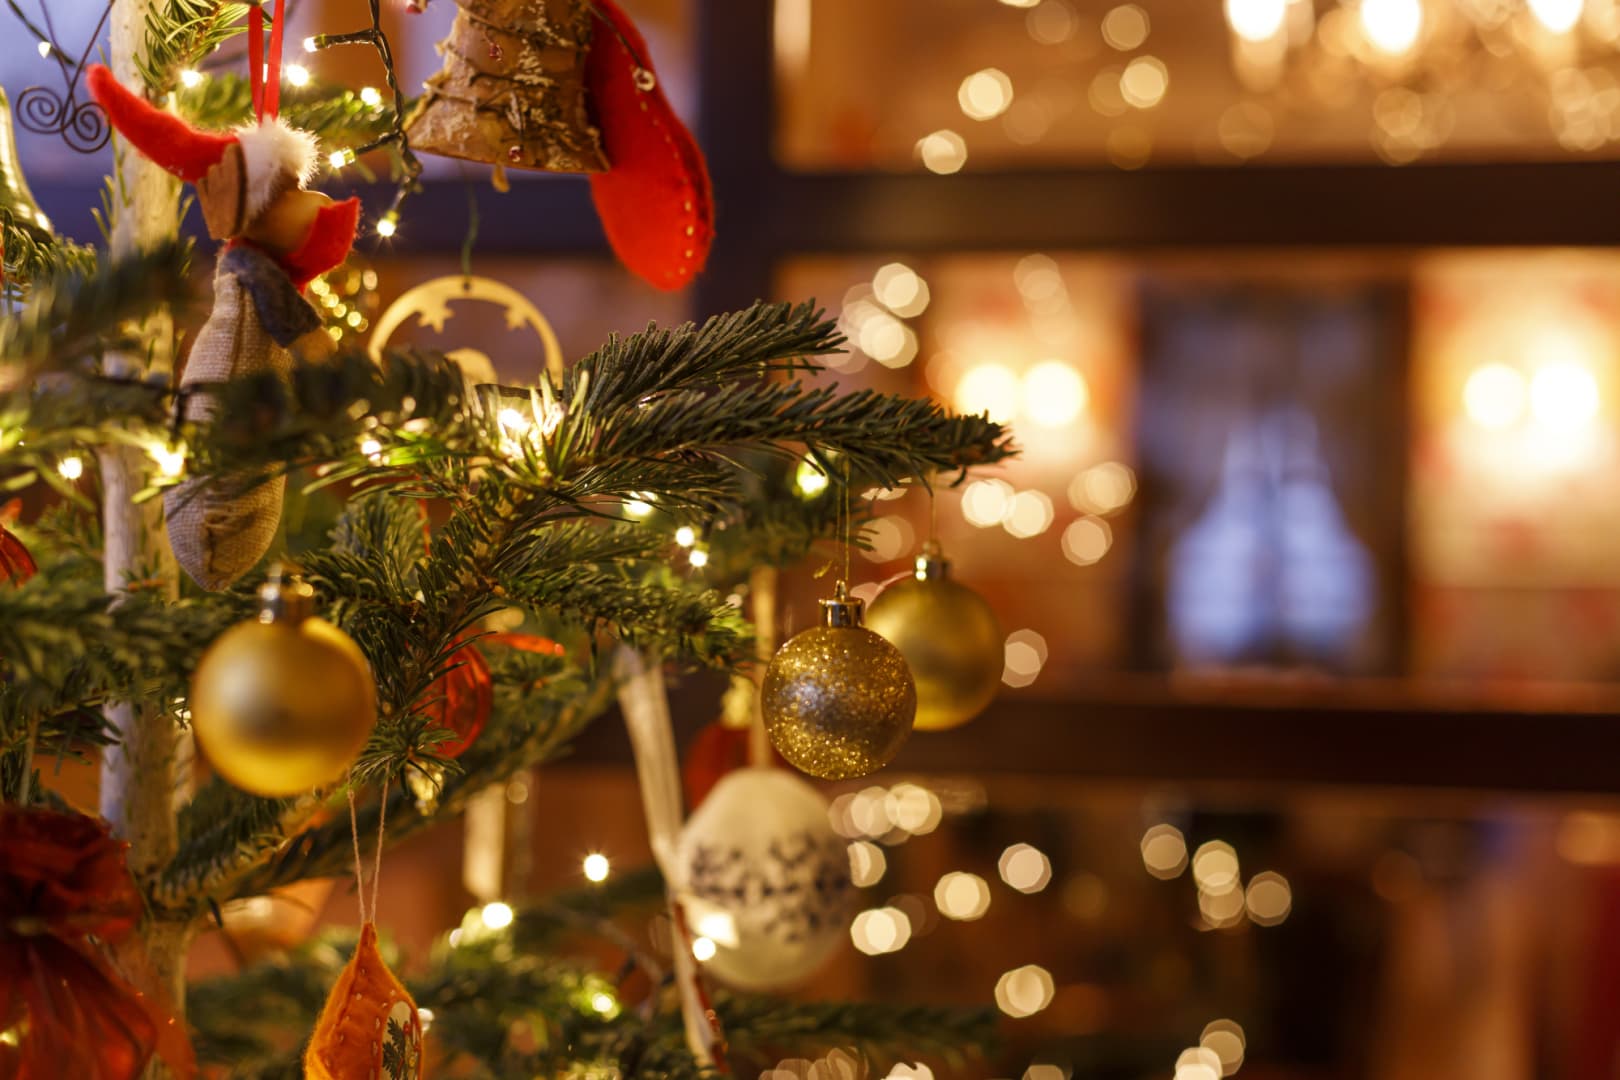 A Villa Rosa étterem és panzió megidézi a karácsonyi vásárok hangulatát